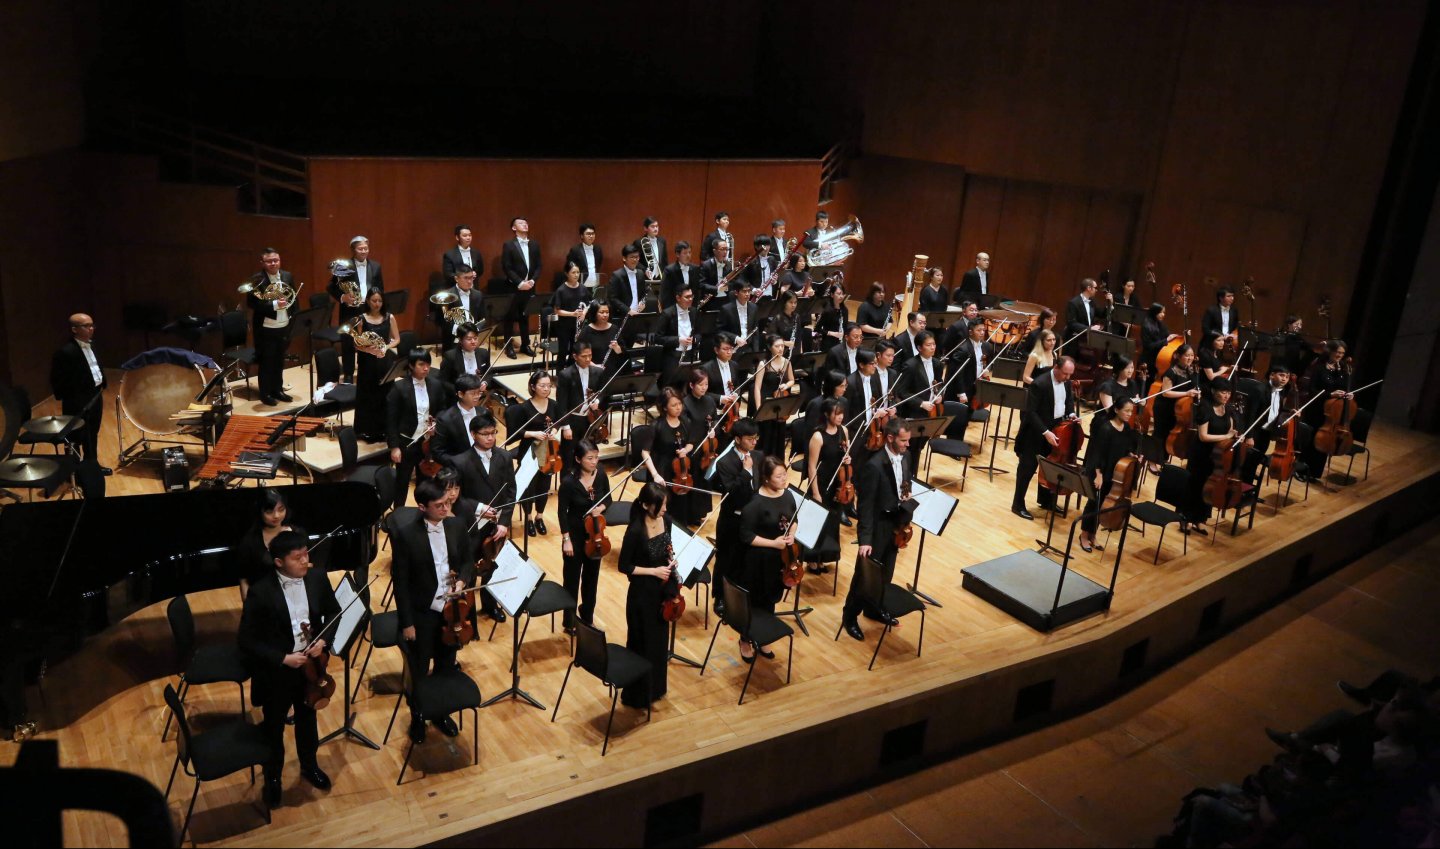 香港小交响乐团众乐师于香港大会堂音乐厅舞台上合影